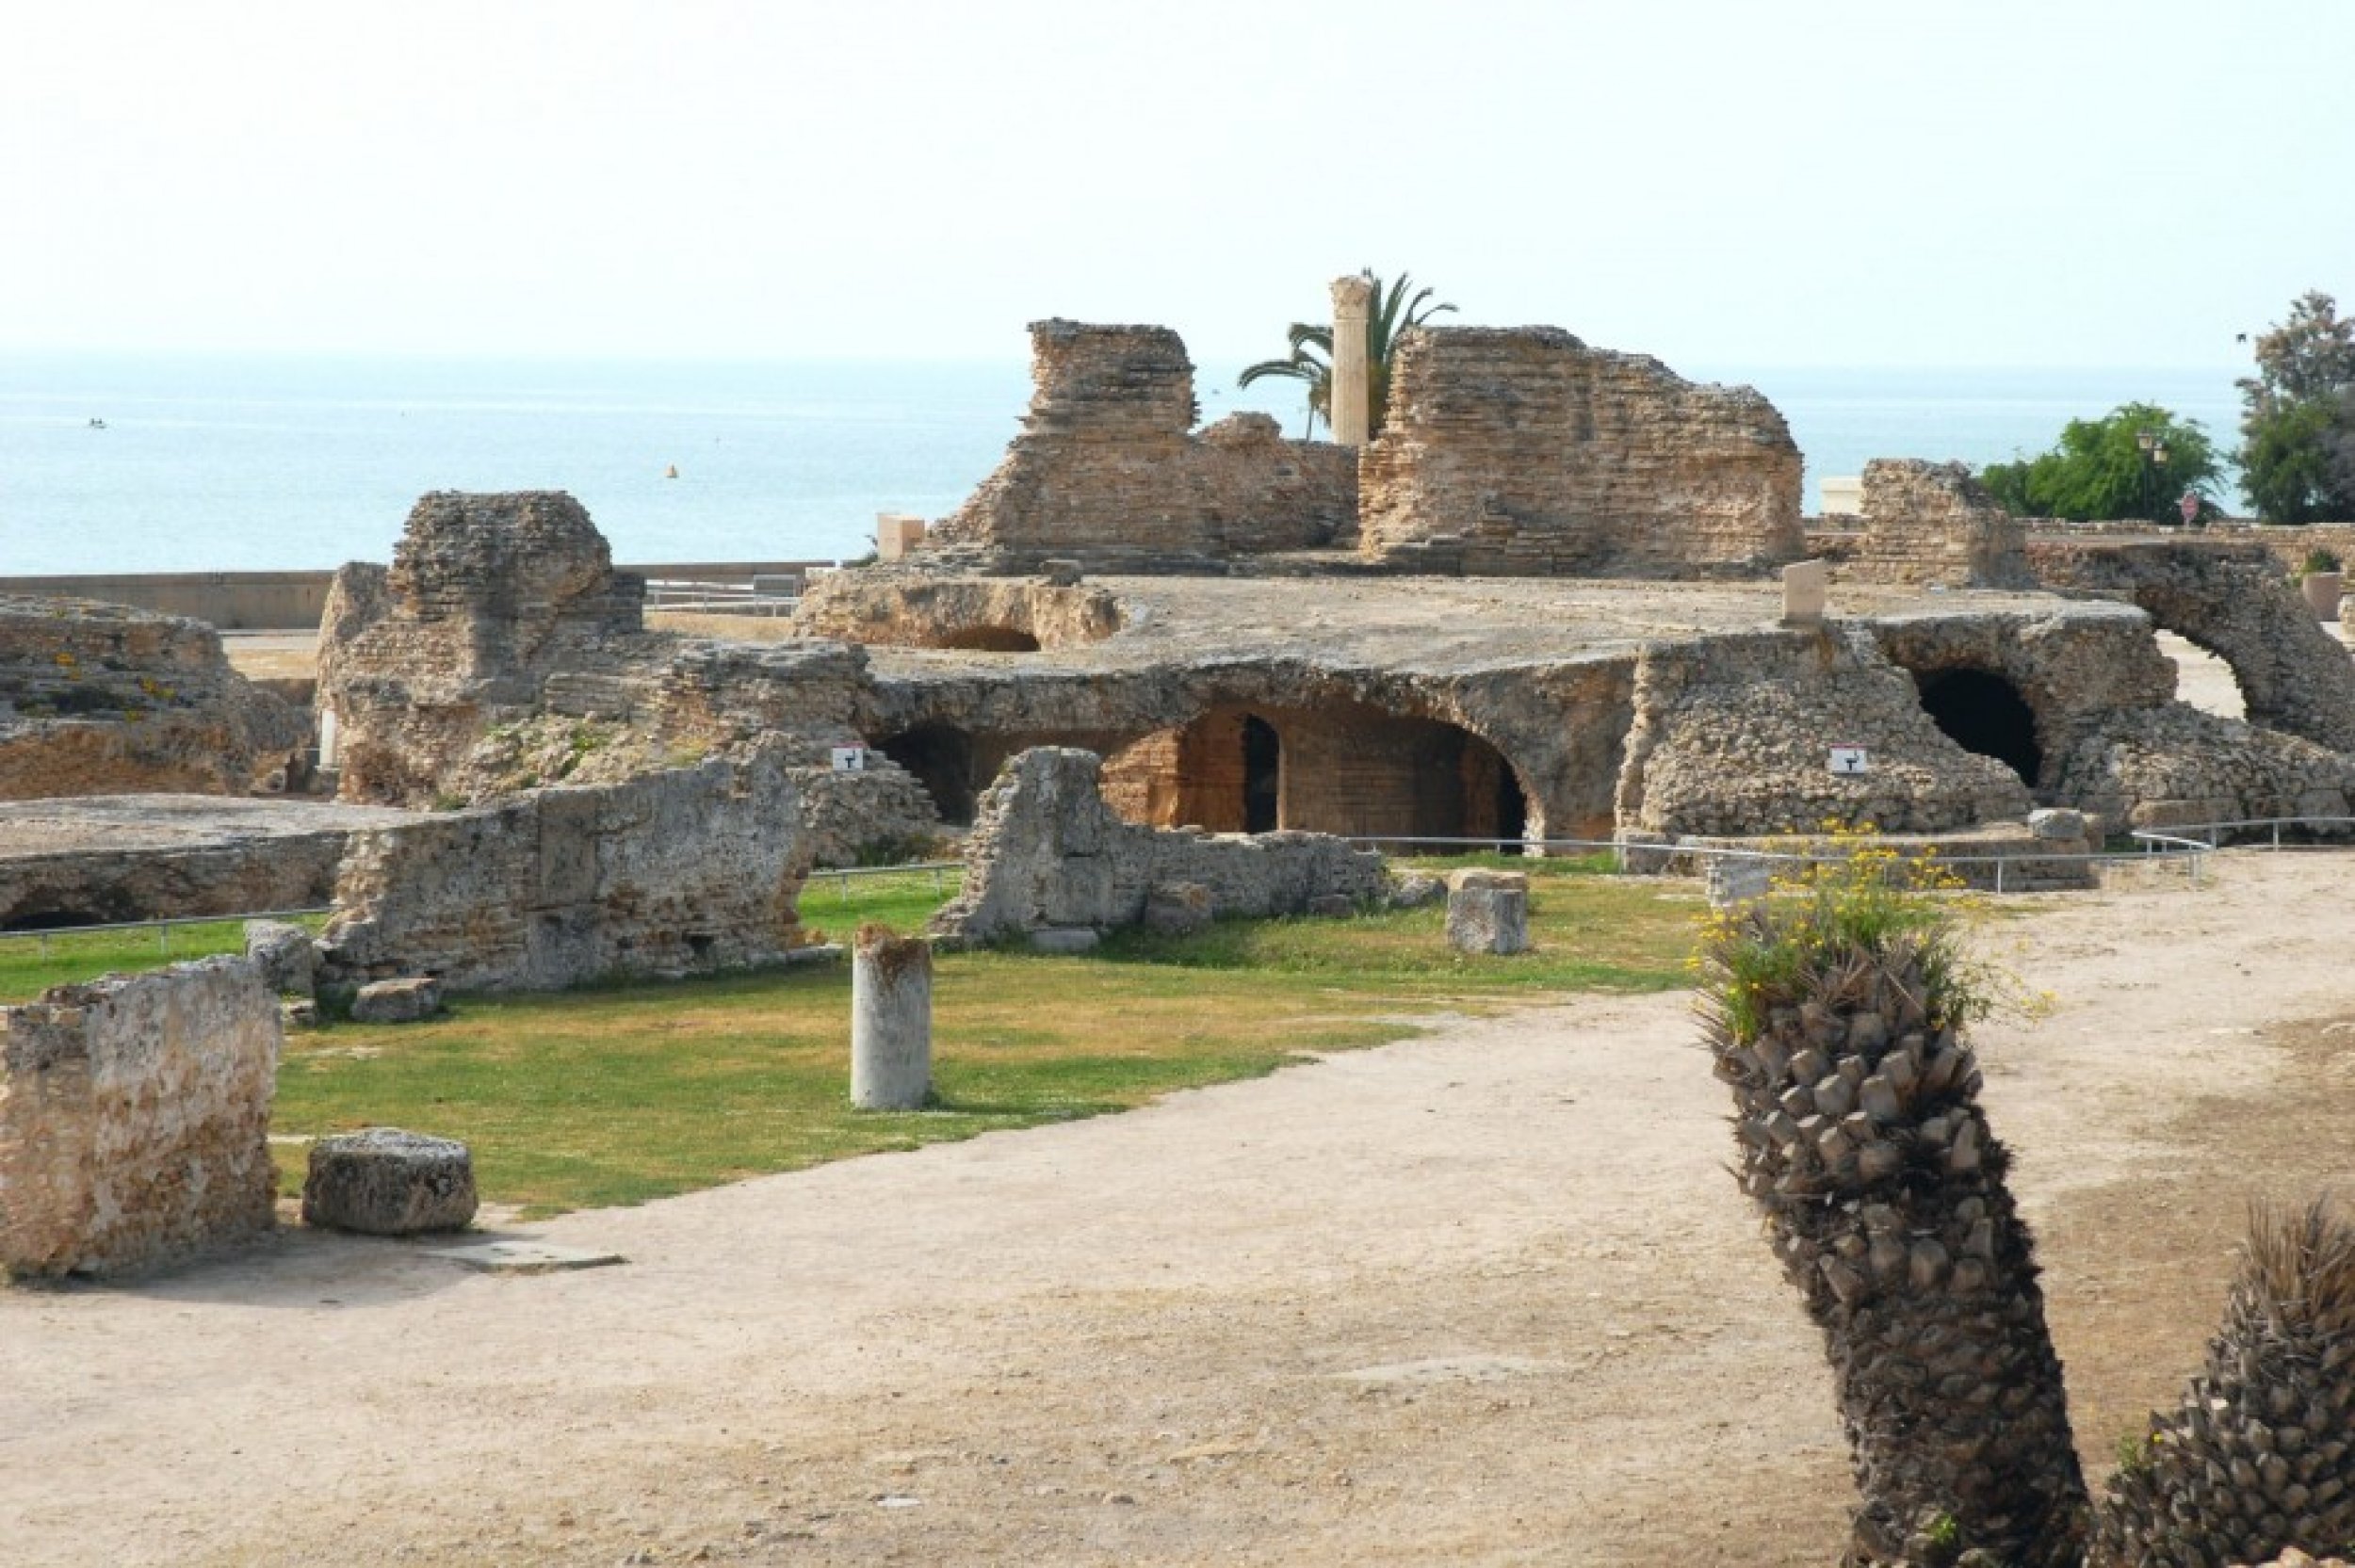 4. Carthage Ruins, Tunisia